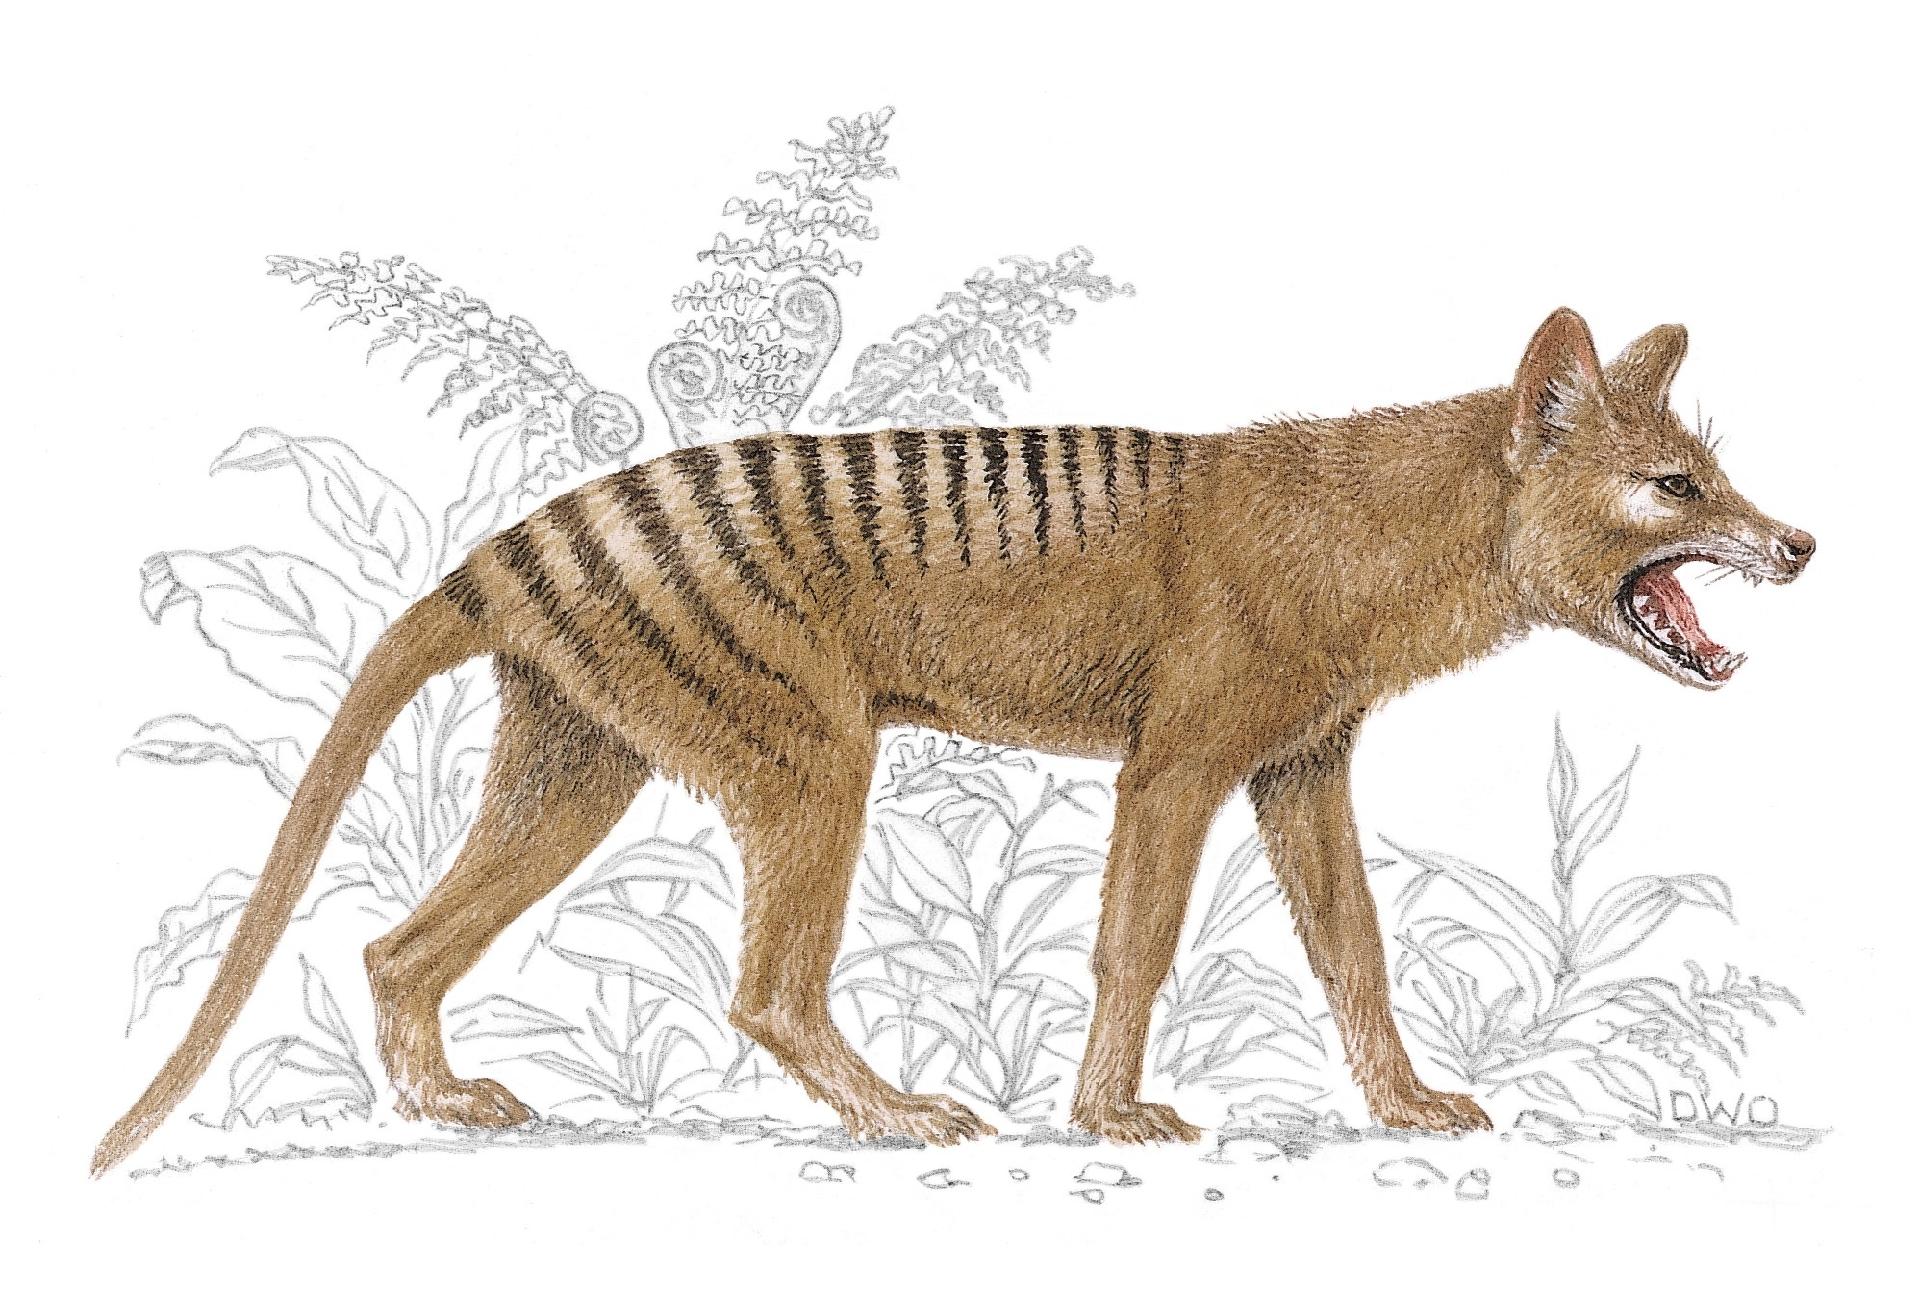 Tigre-da-tasmânia: Austrália cogita existência de marsupial declarado extinto